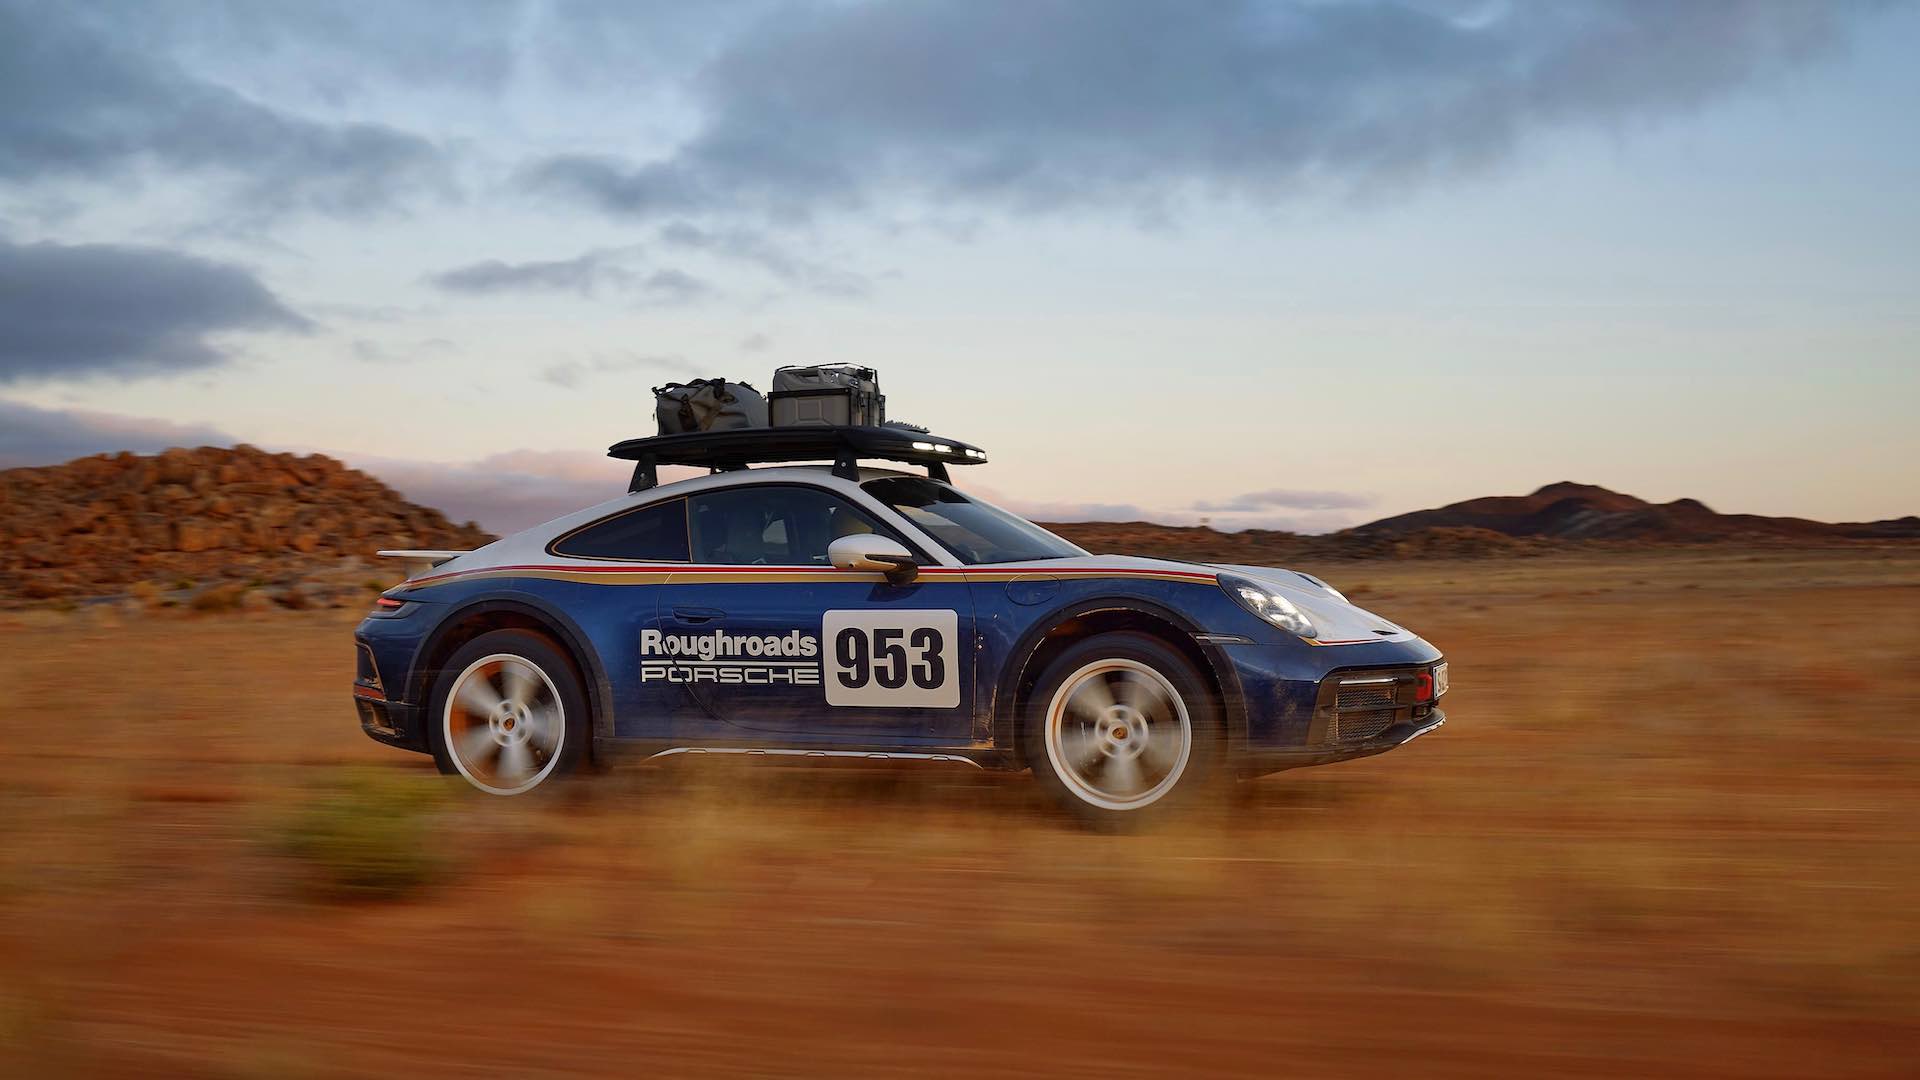 The new Porsche 911 Dakar is a monster off-roader